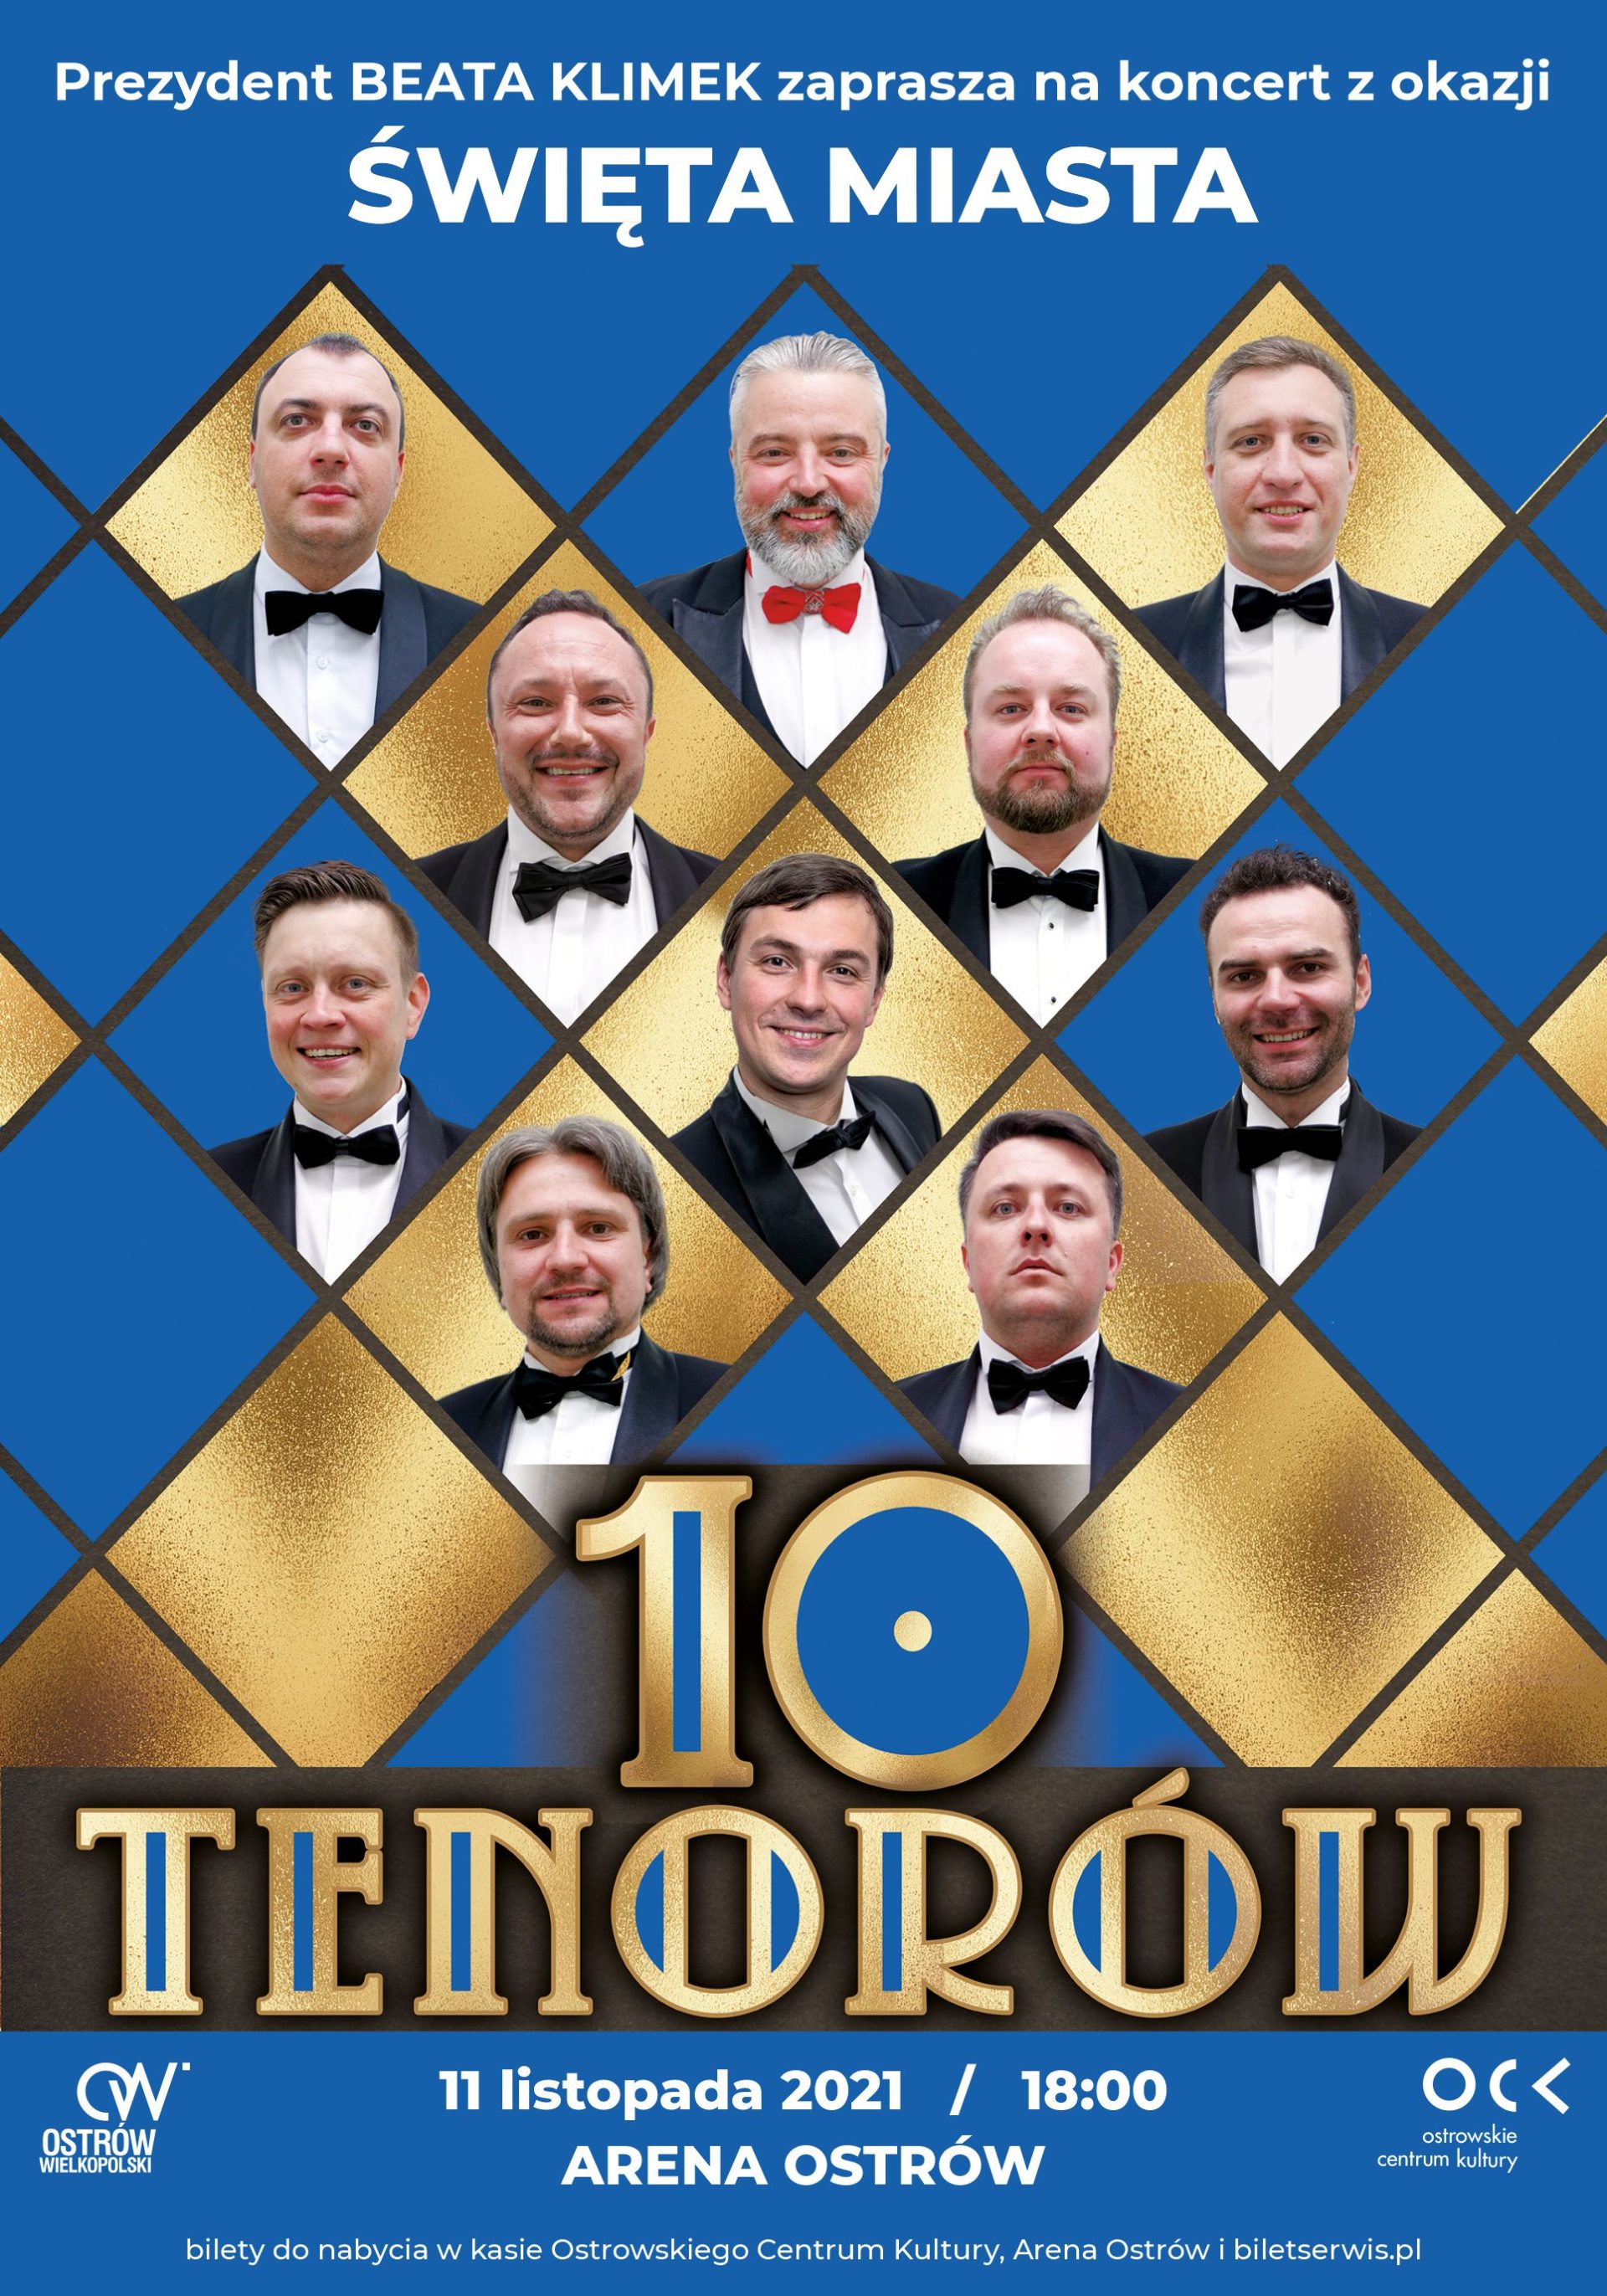 10 tenorów | Arena Ostrów